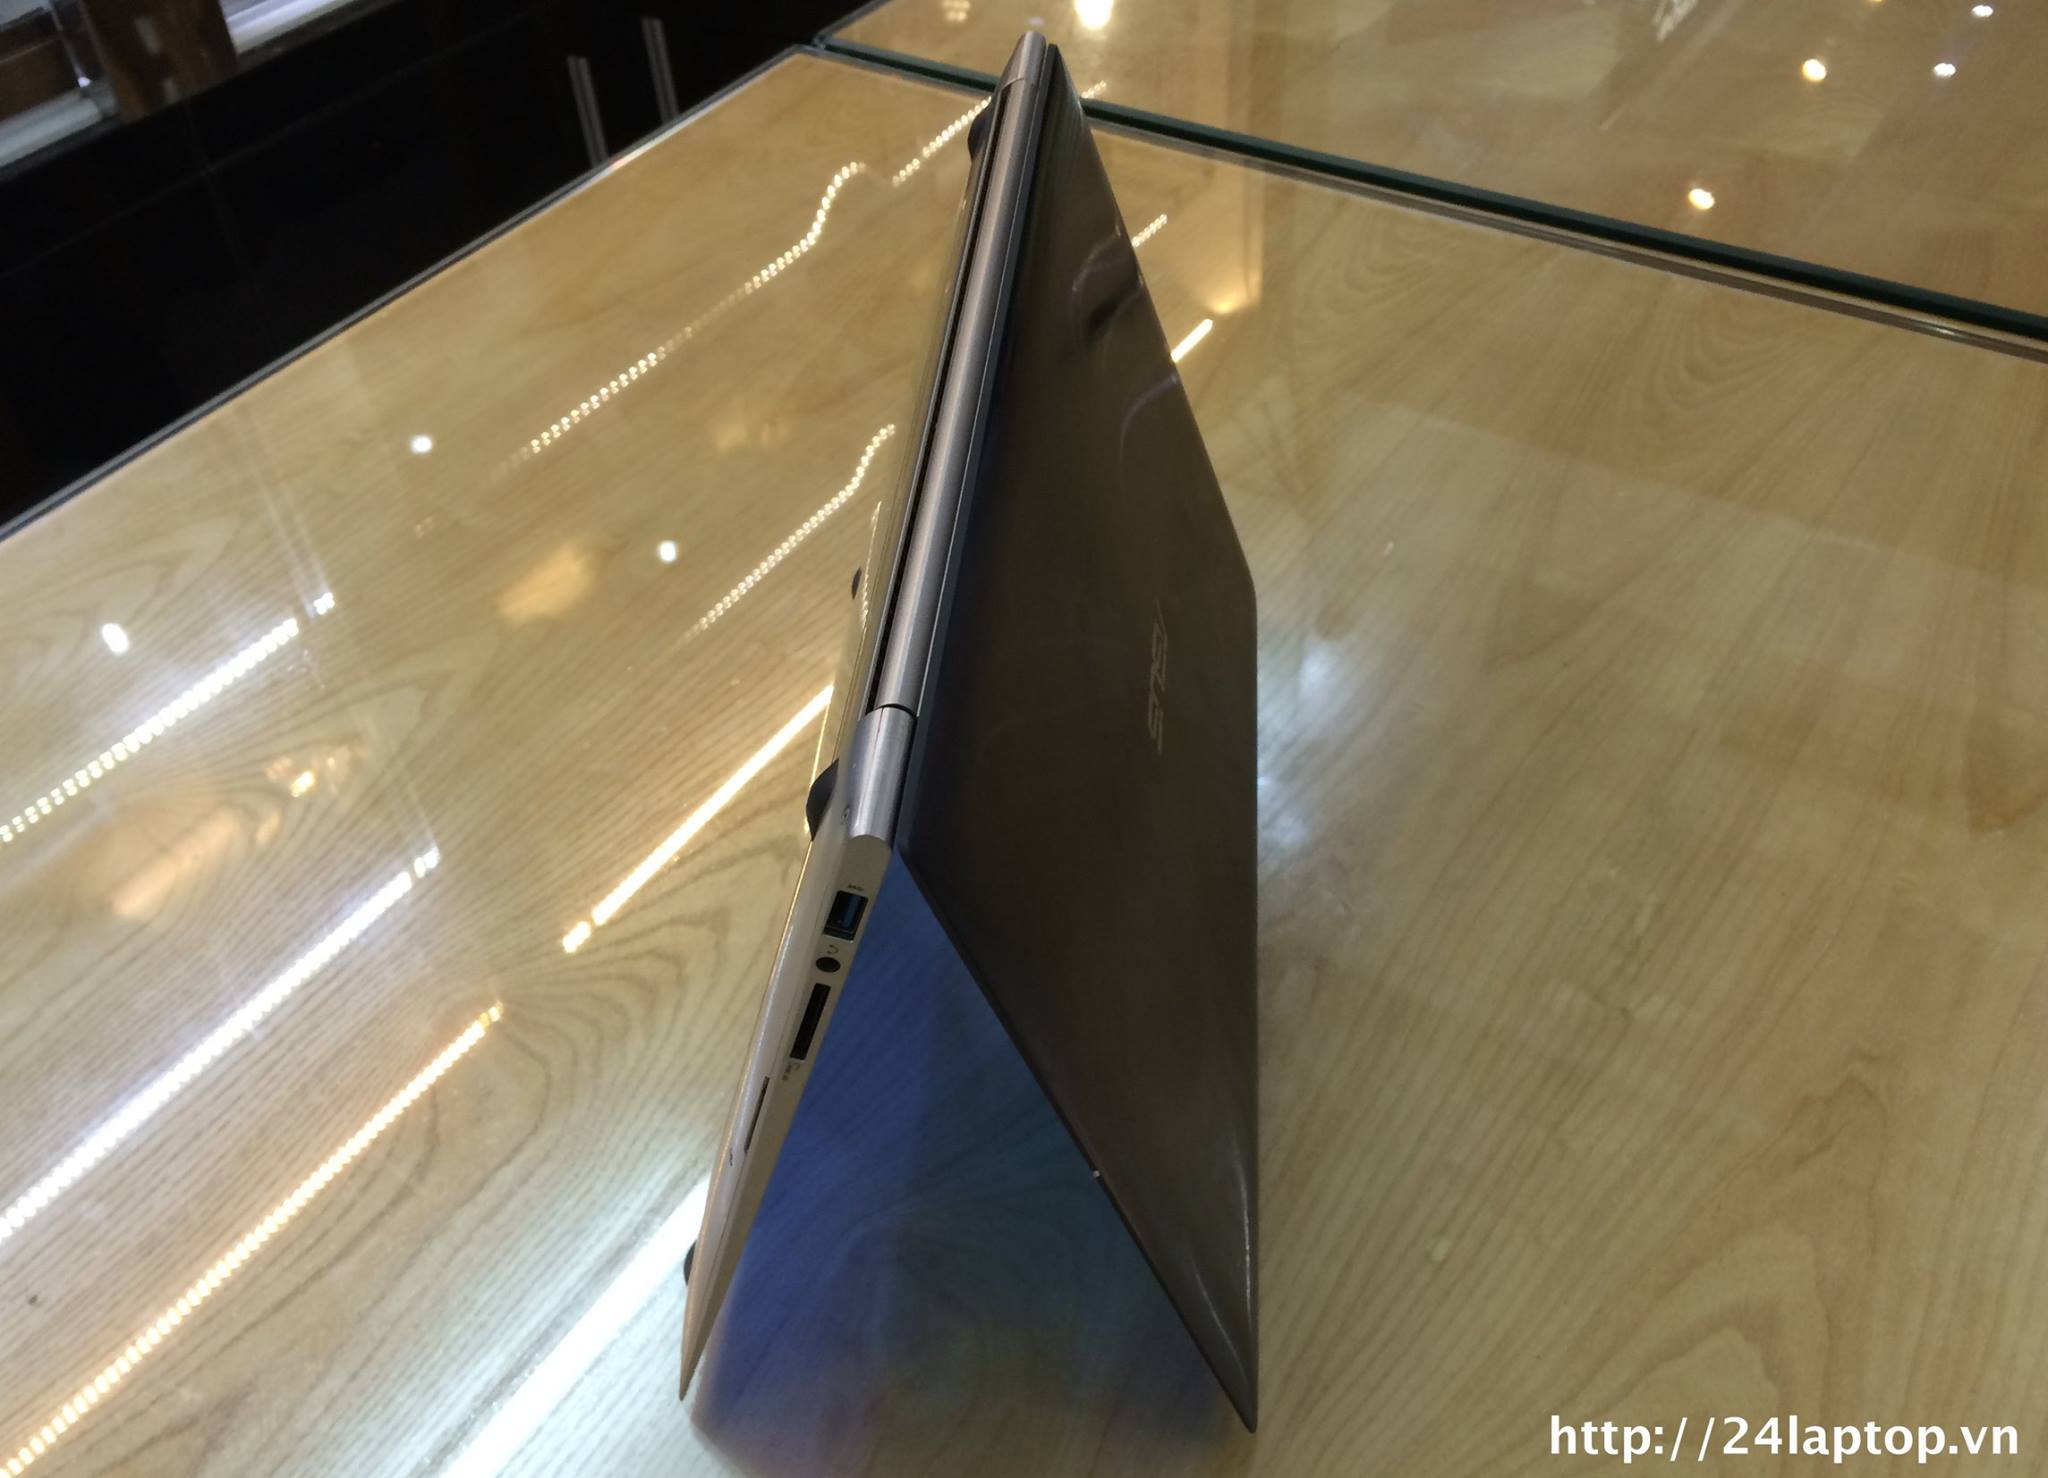 Asus Zenbook Prime UX31A i5.jpg